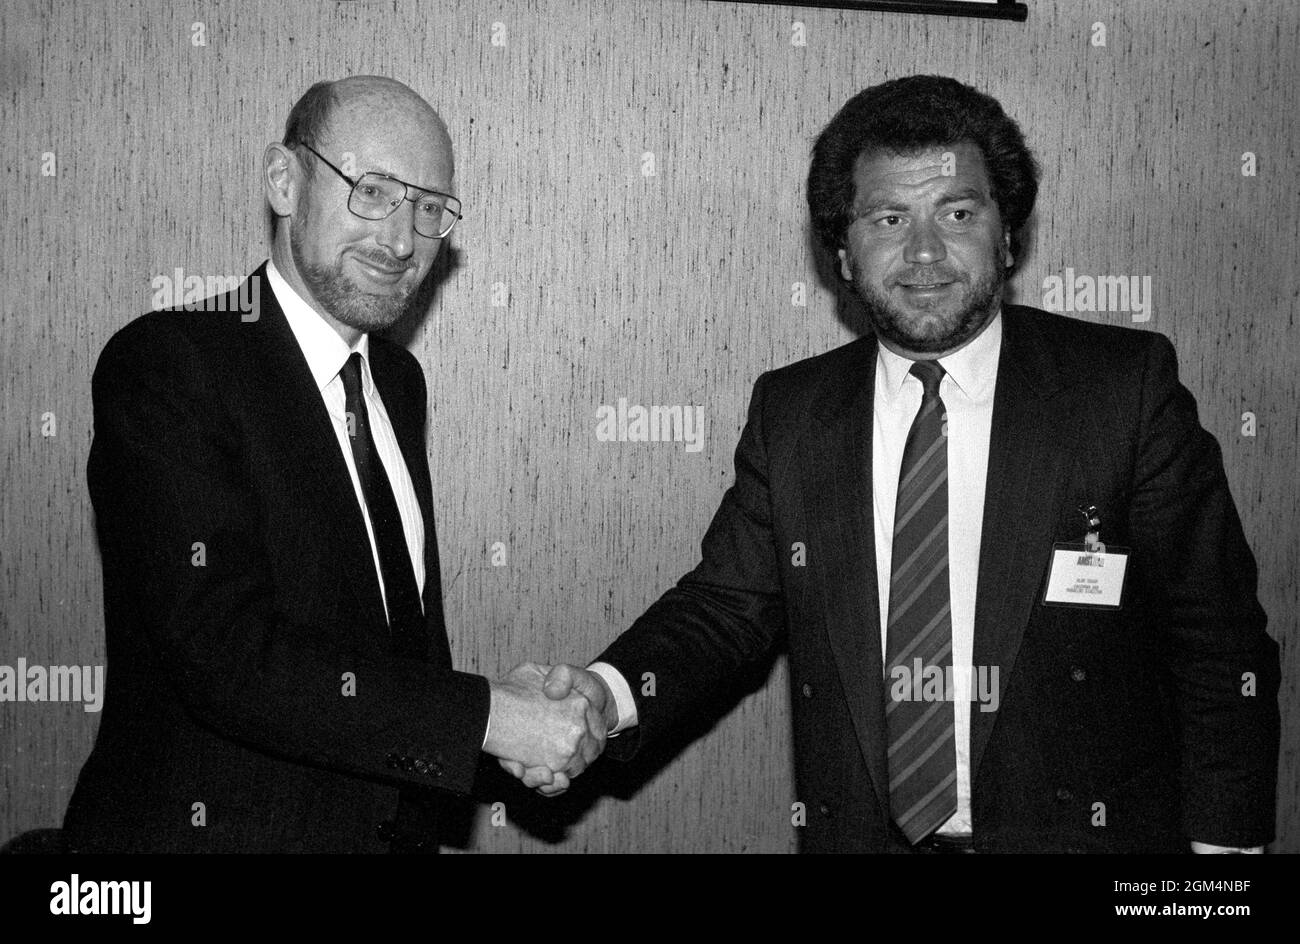 Photo du dossier datée du 07/04/86 de Sir Clive Sinclair, (à gauche) entre les mains de Sir Alan Sugar, directeur d'Amstrad Consumer Electronics plc, après avoir annoncé qu'Amstrad avait acheté tous les droits de vendre Sinclair Computers dans le monde entier dans le cadre d'un contrat de 5 millions de livres sterling. Sir Clive Sinclair, pionnier de l'informatique domestique, est décédé à l'âge de 81 ans, selon des rapports. Date d'émission : jeudi 16 septembre 2021. Banque D'Images